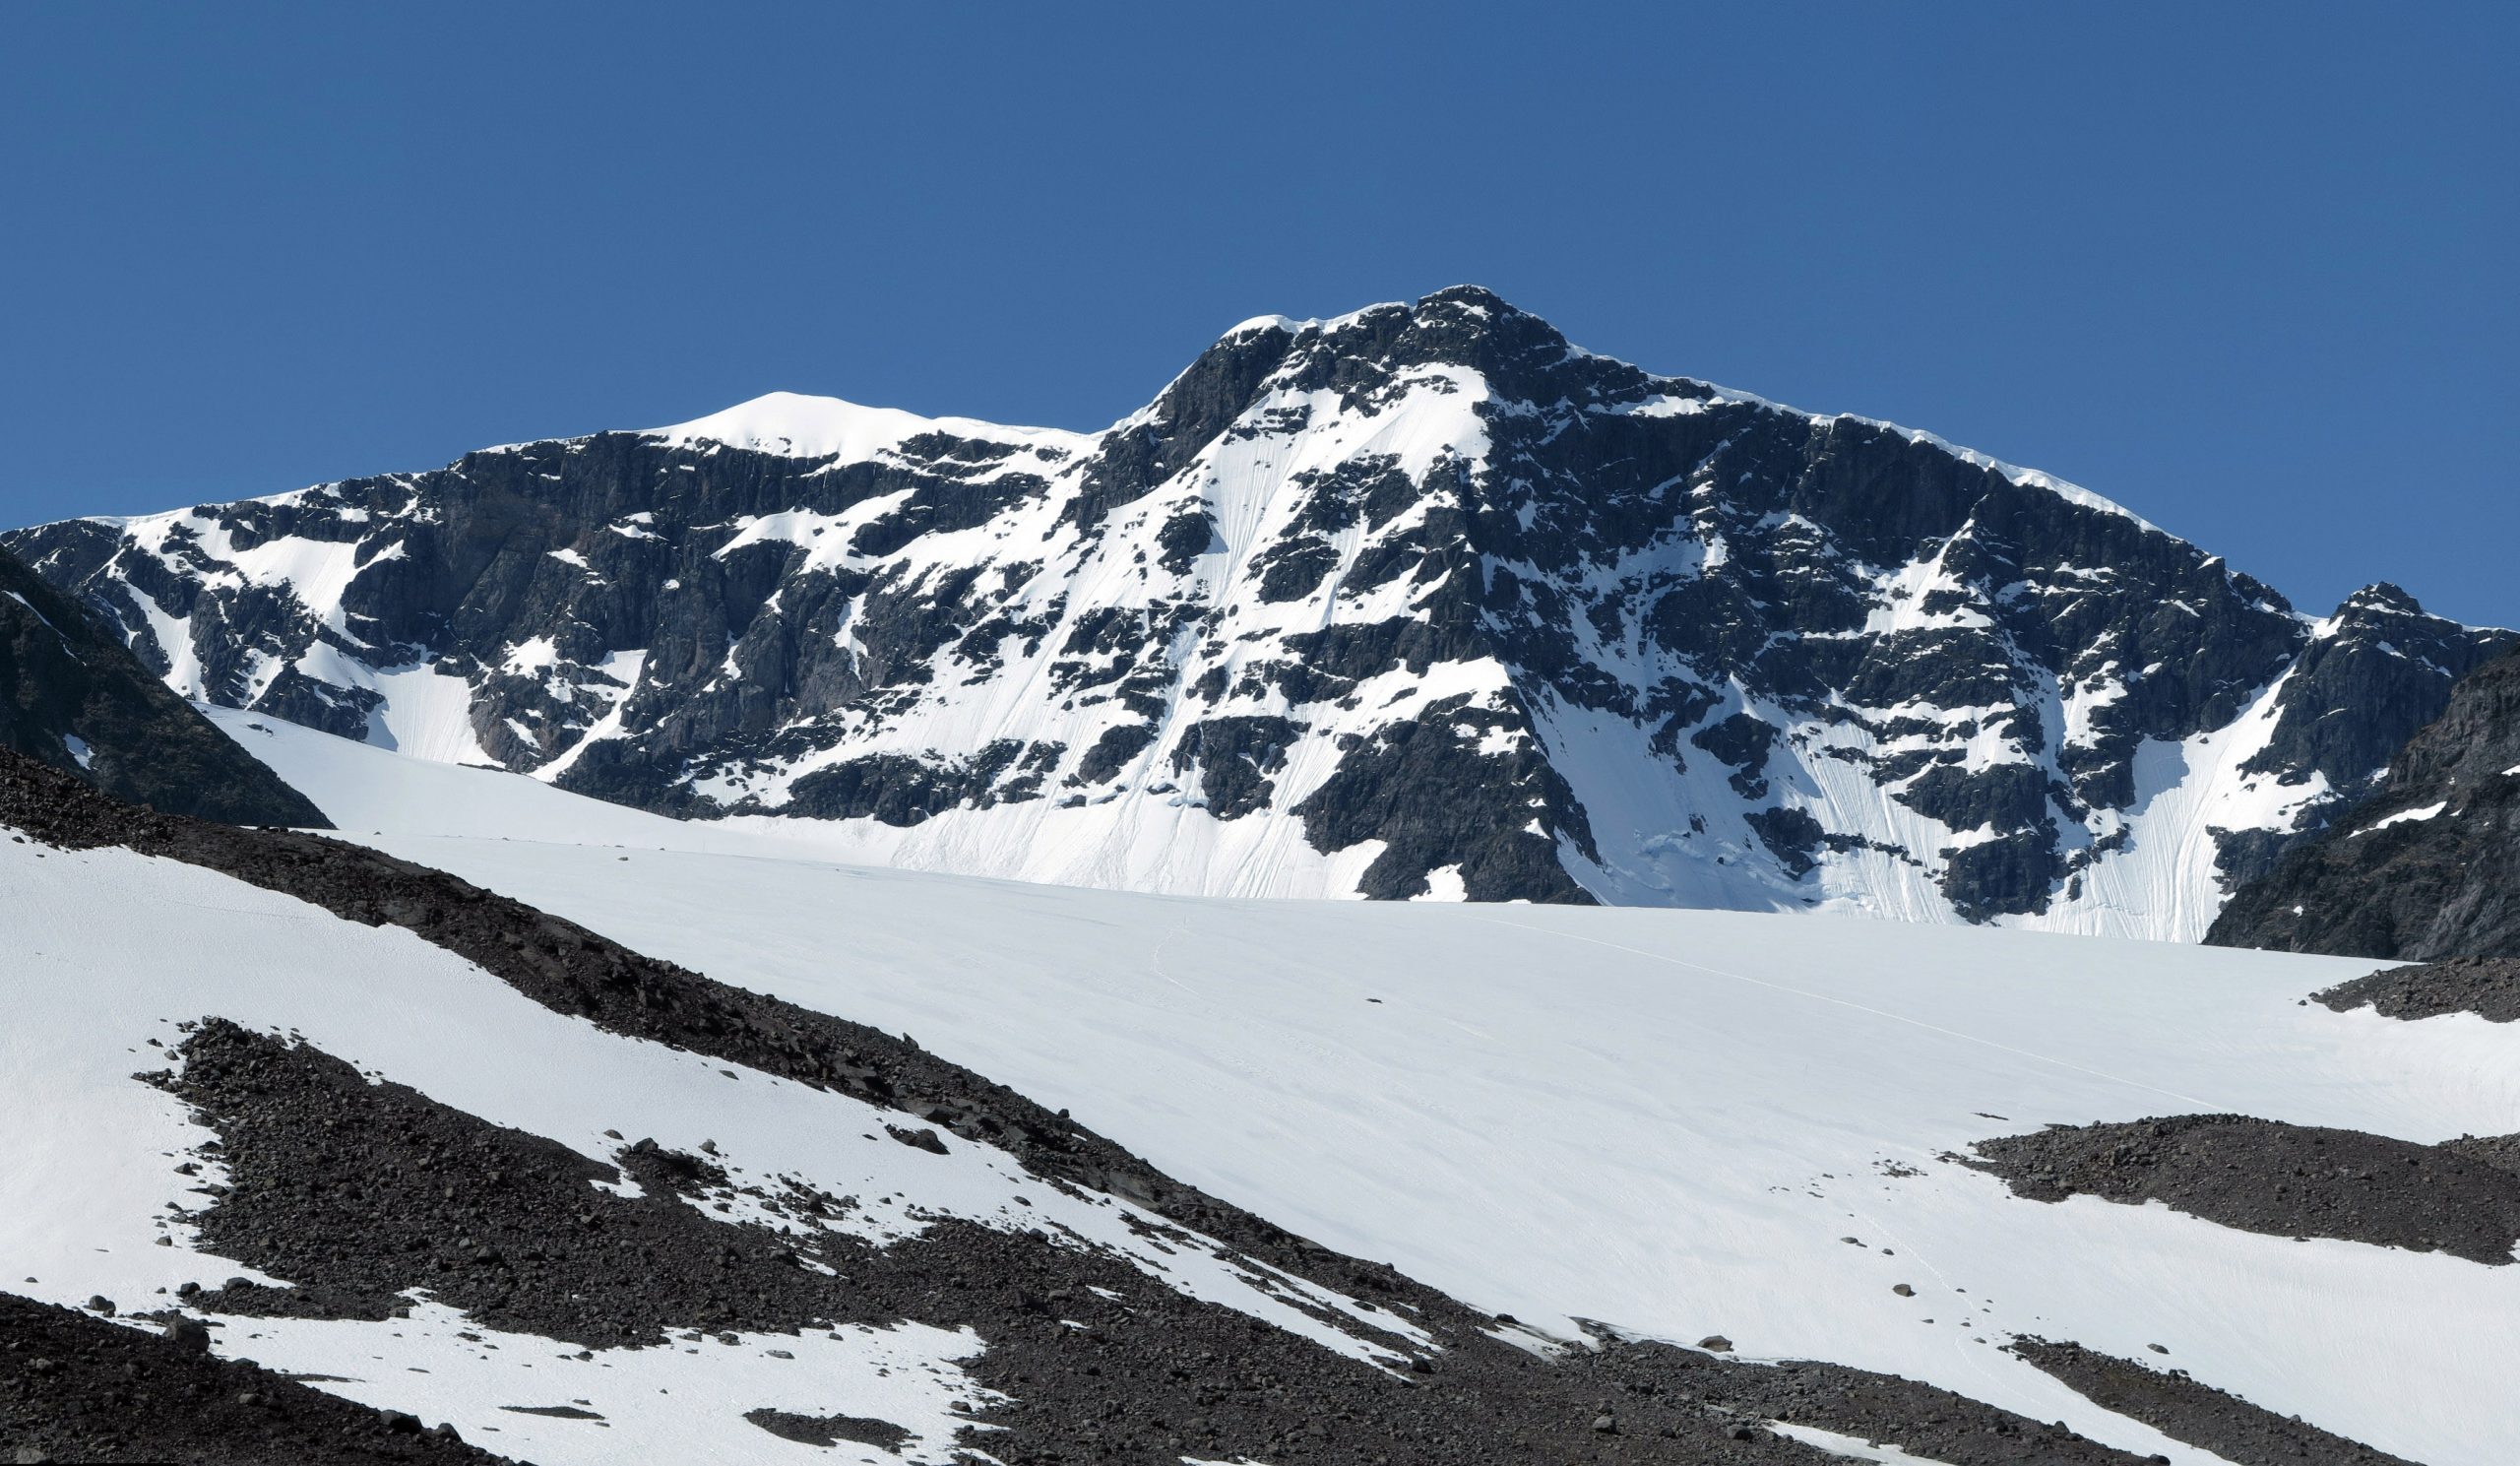 Kebnekaise - đỉnh núi cao nhất của Thụy Điển càng ngày càng thấp đi